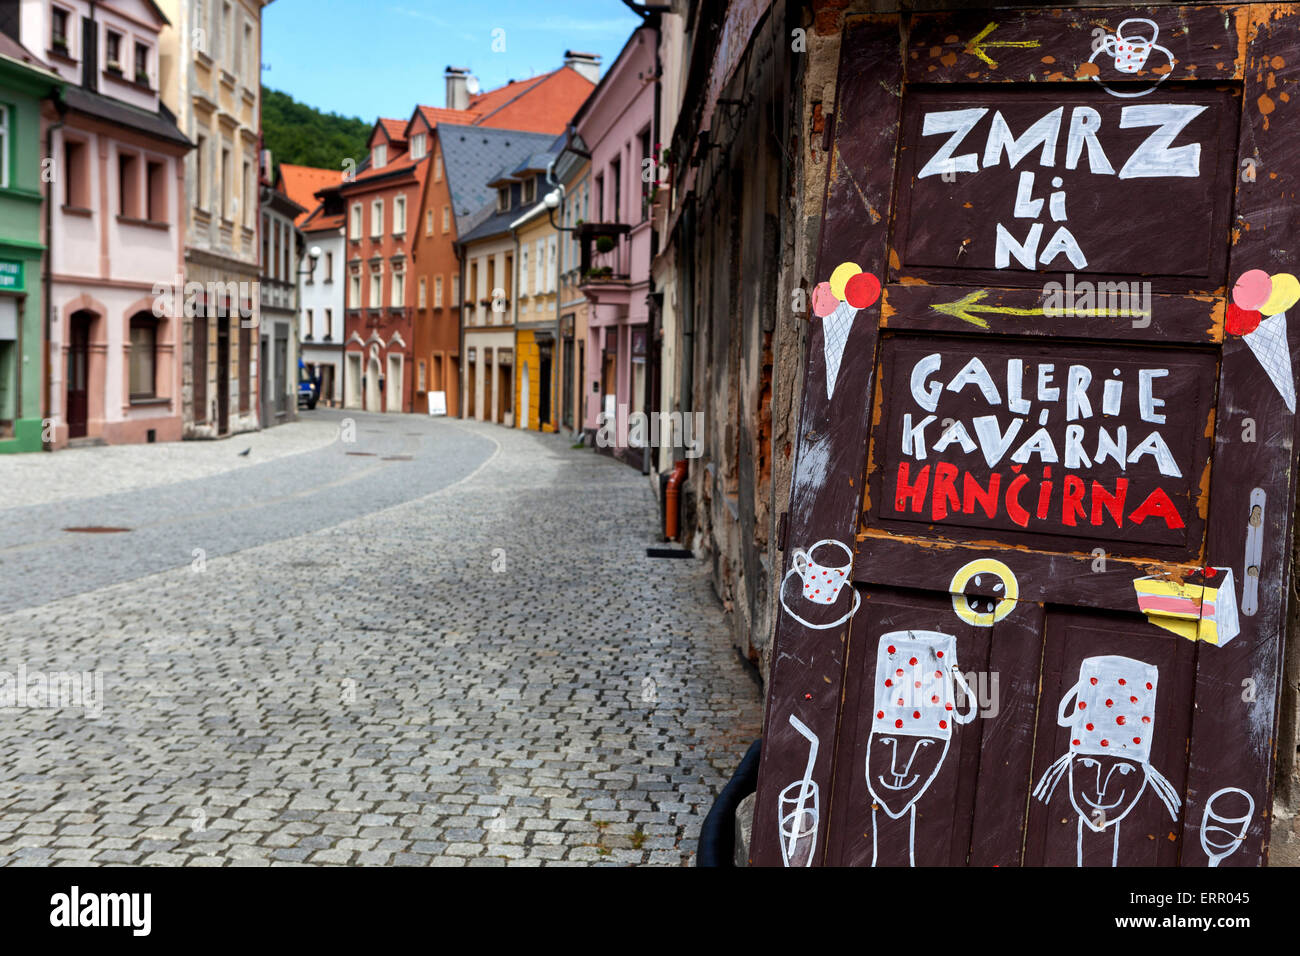 Historique de la vieille ville de Loket nad Ohri, région de Karlovy Vary, en Bohême de l'ouest, République Tchèque Banque D'Images